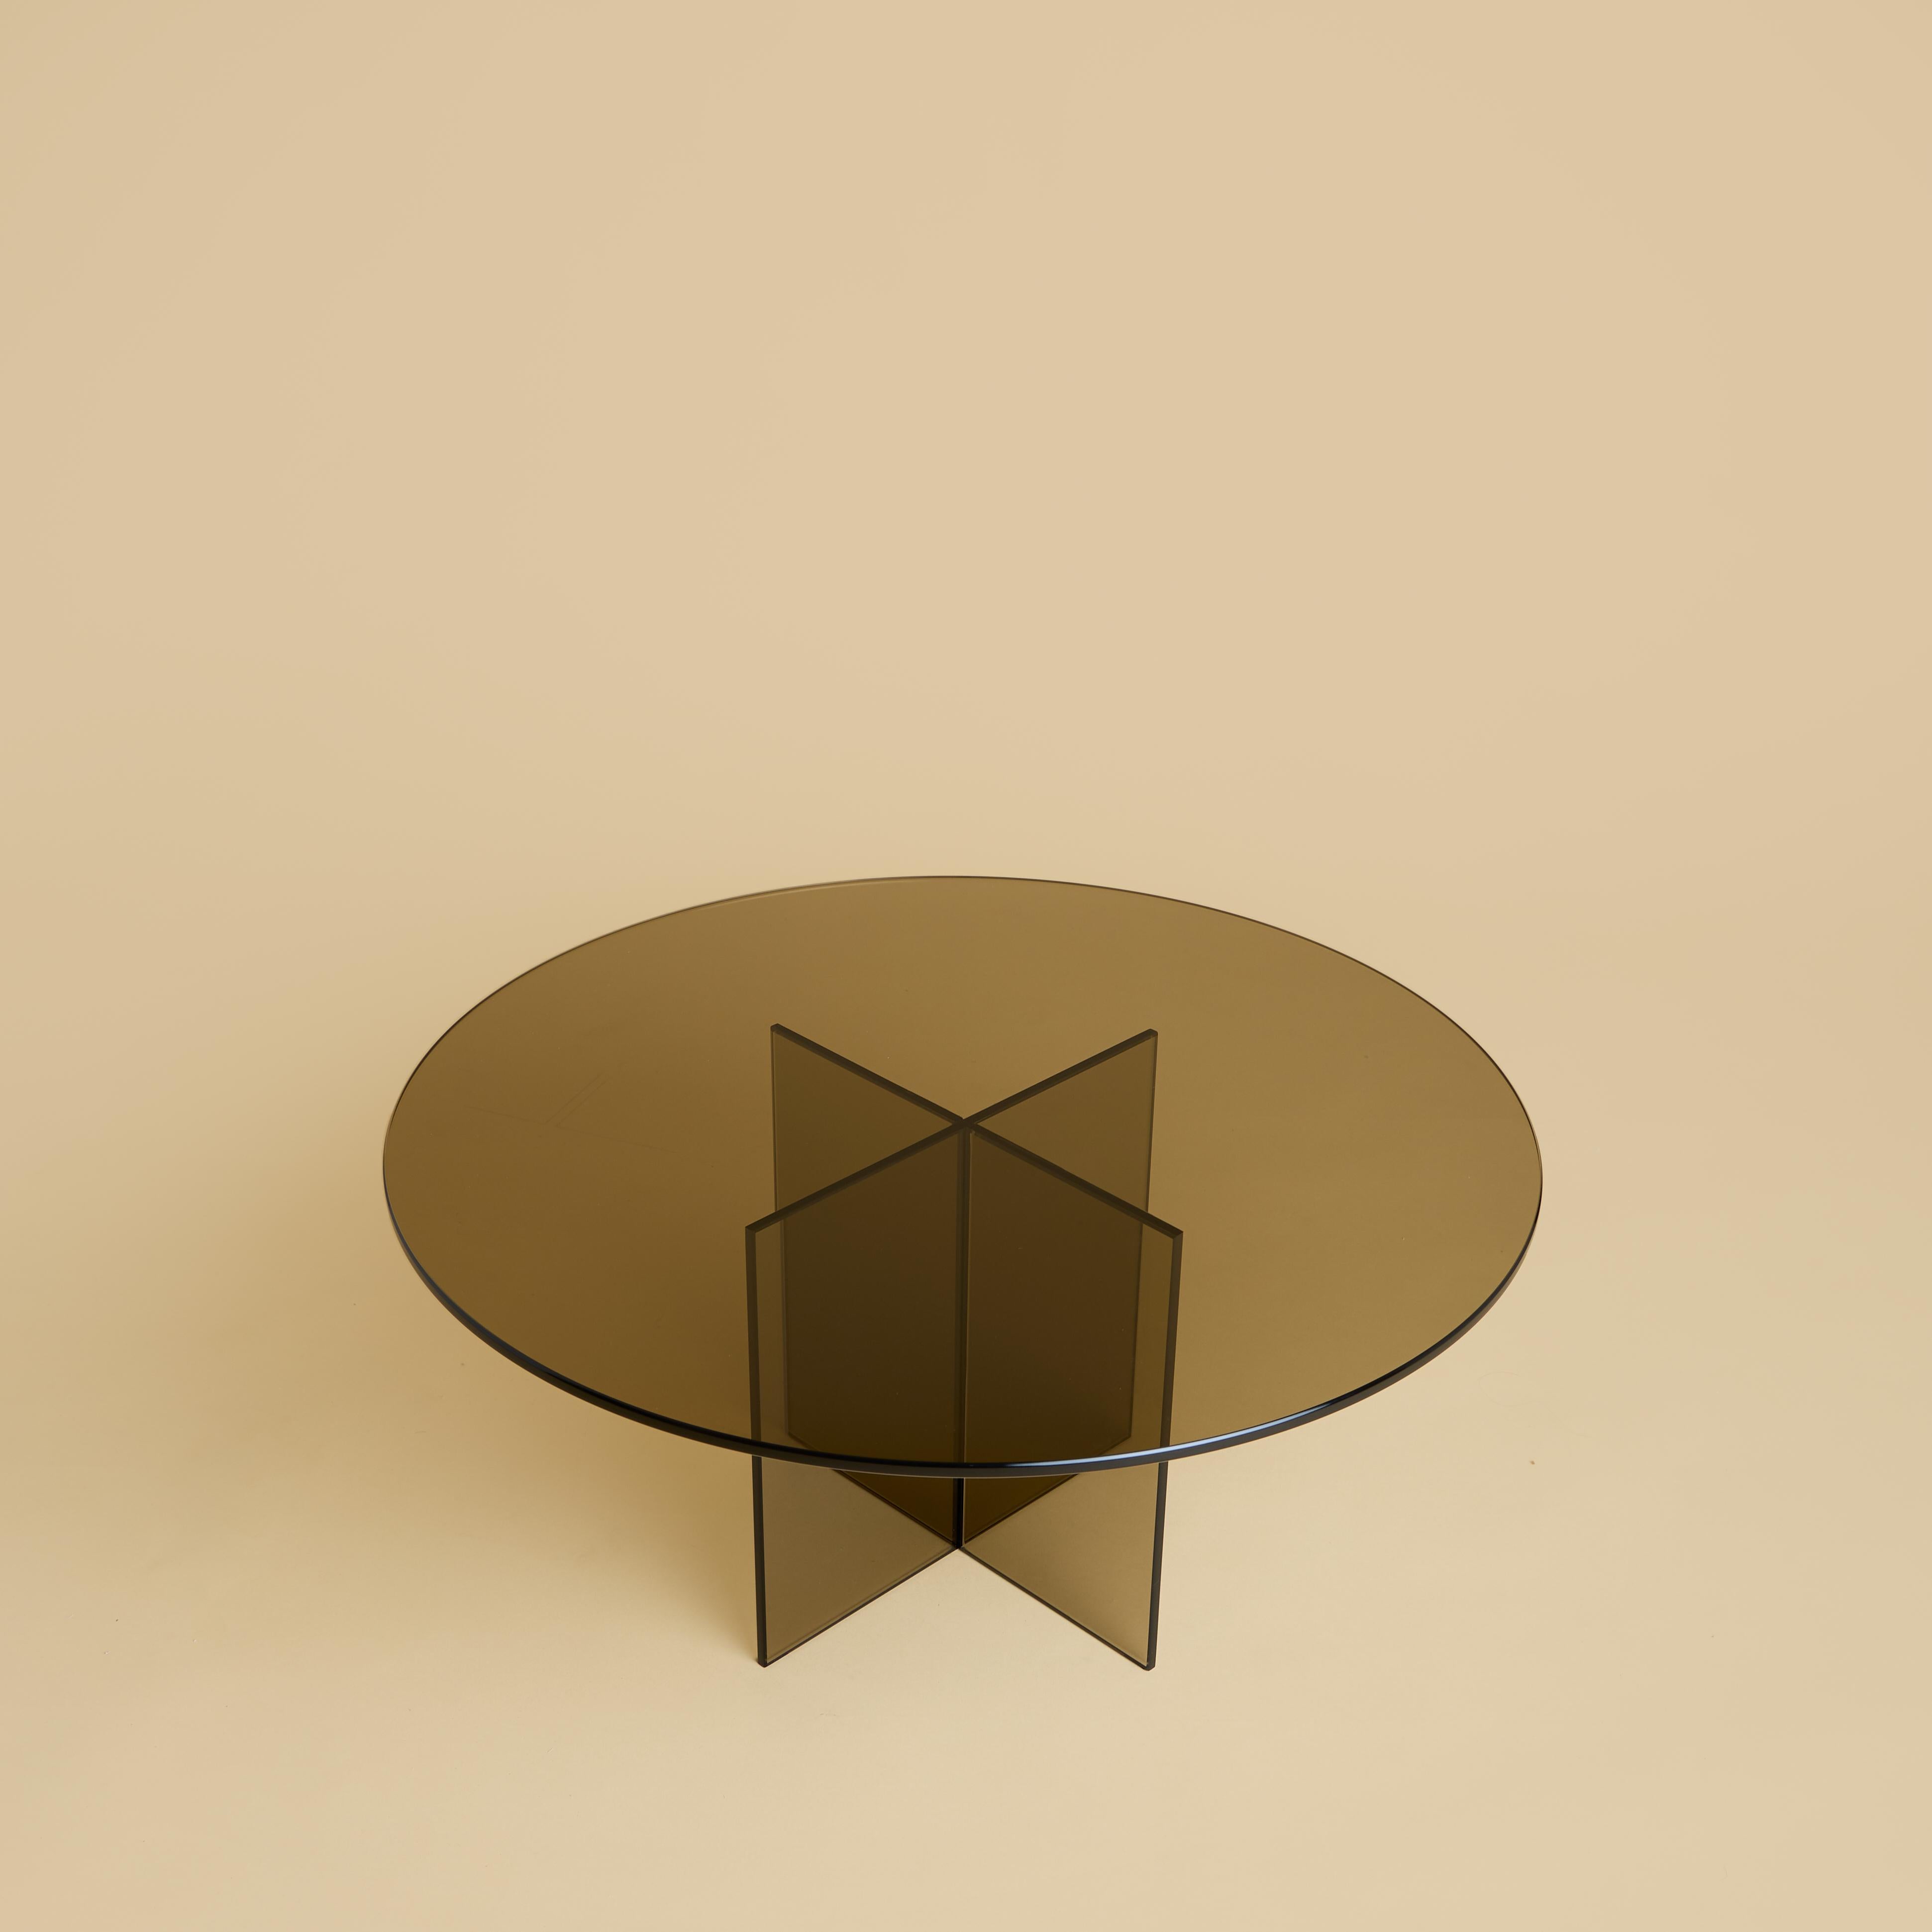 La table basse Aka est entièrement réalisée en verre bronzé. Le sommet est circulaire et mesure 60 cm de diamètre, tandis que la base est obtenue en collant des dalles légèrement biseautées de 6 mm d'épaisseur.
Verre bronzé pour cette table obtenue